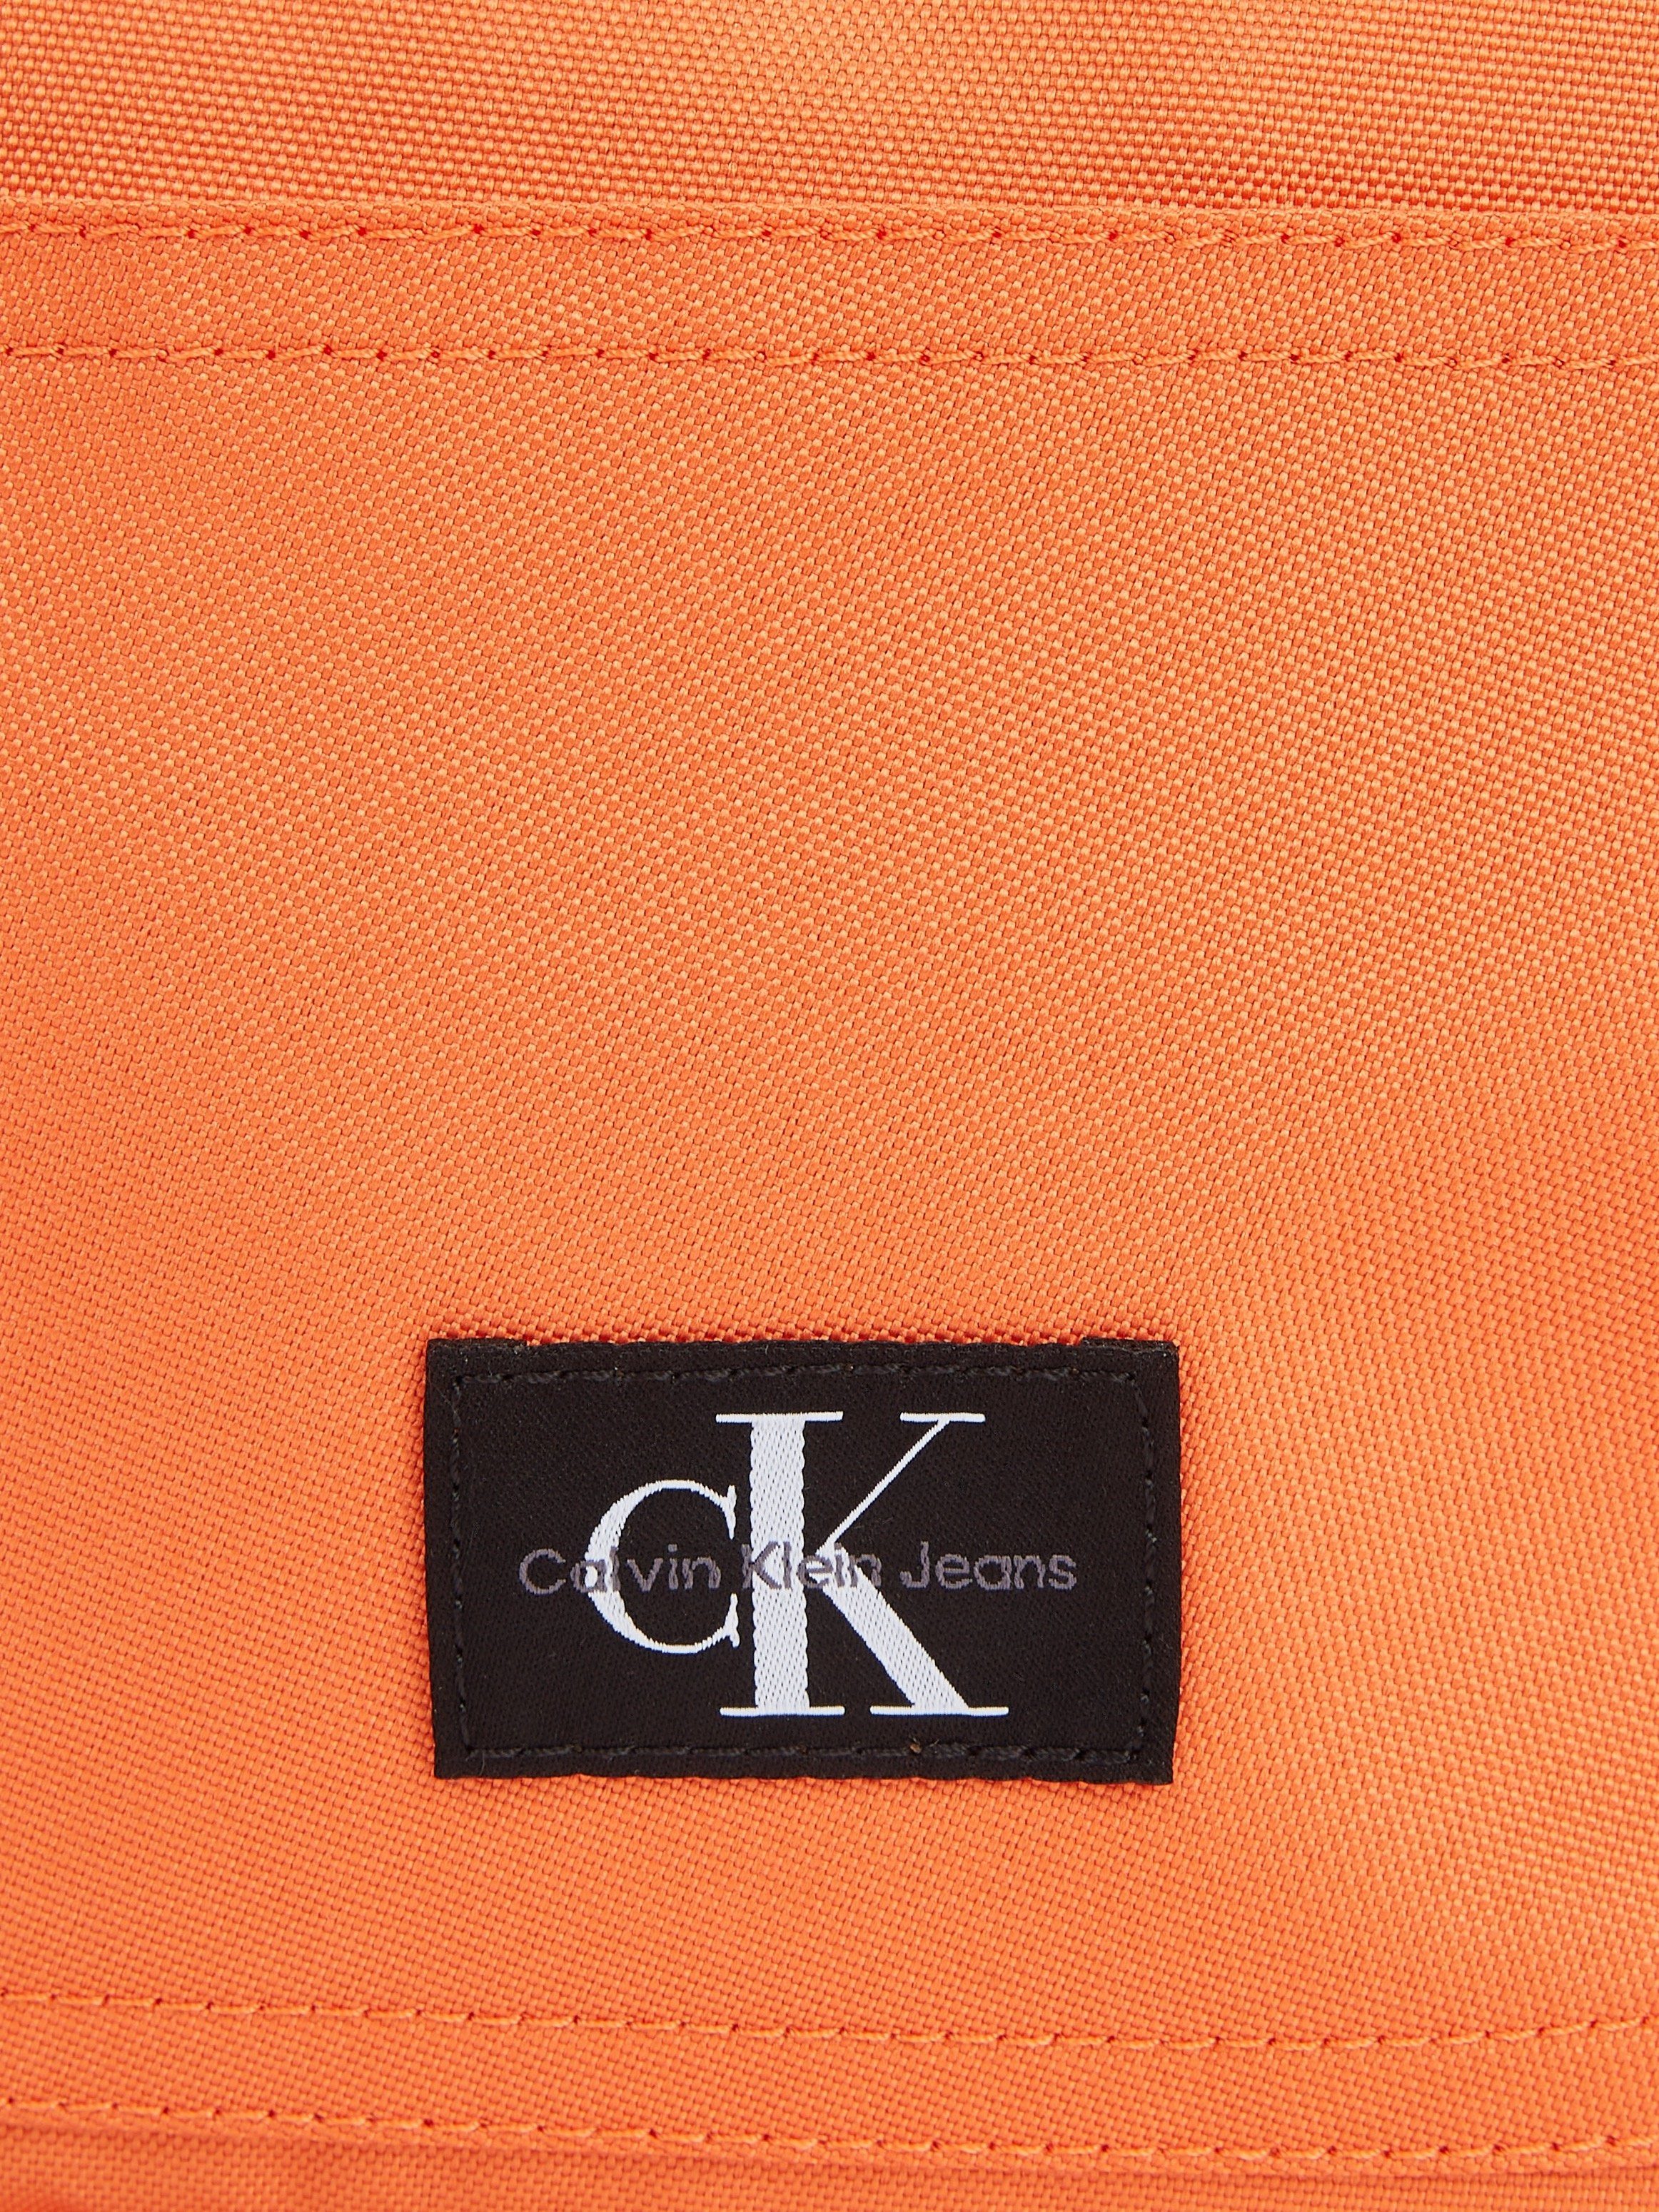 BP40 ESSENTIALS Klein Calvin Jeans SPORT dezentem koralle W, Design in Cityrucksack CAMPUS